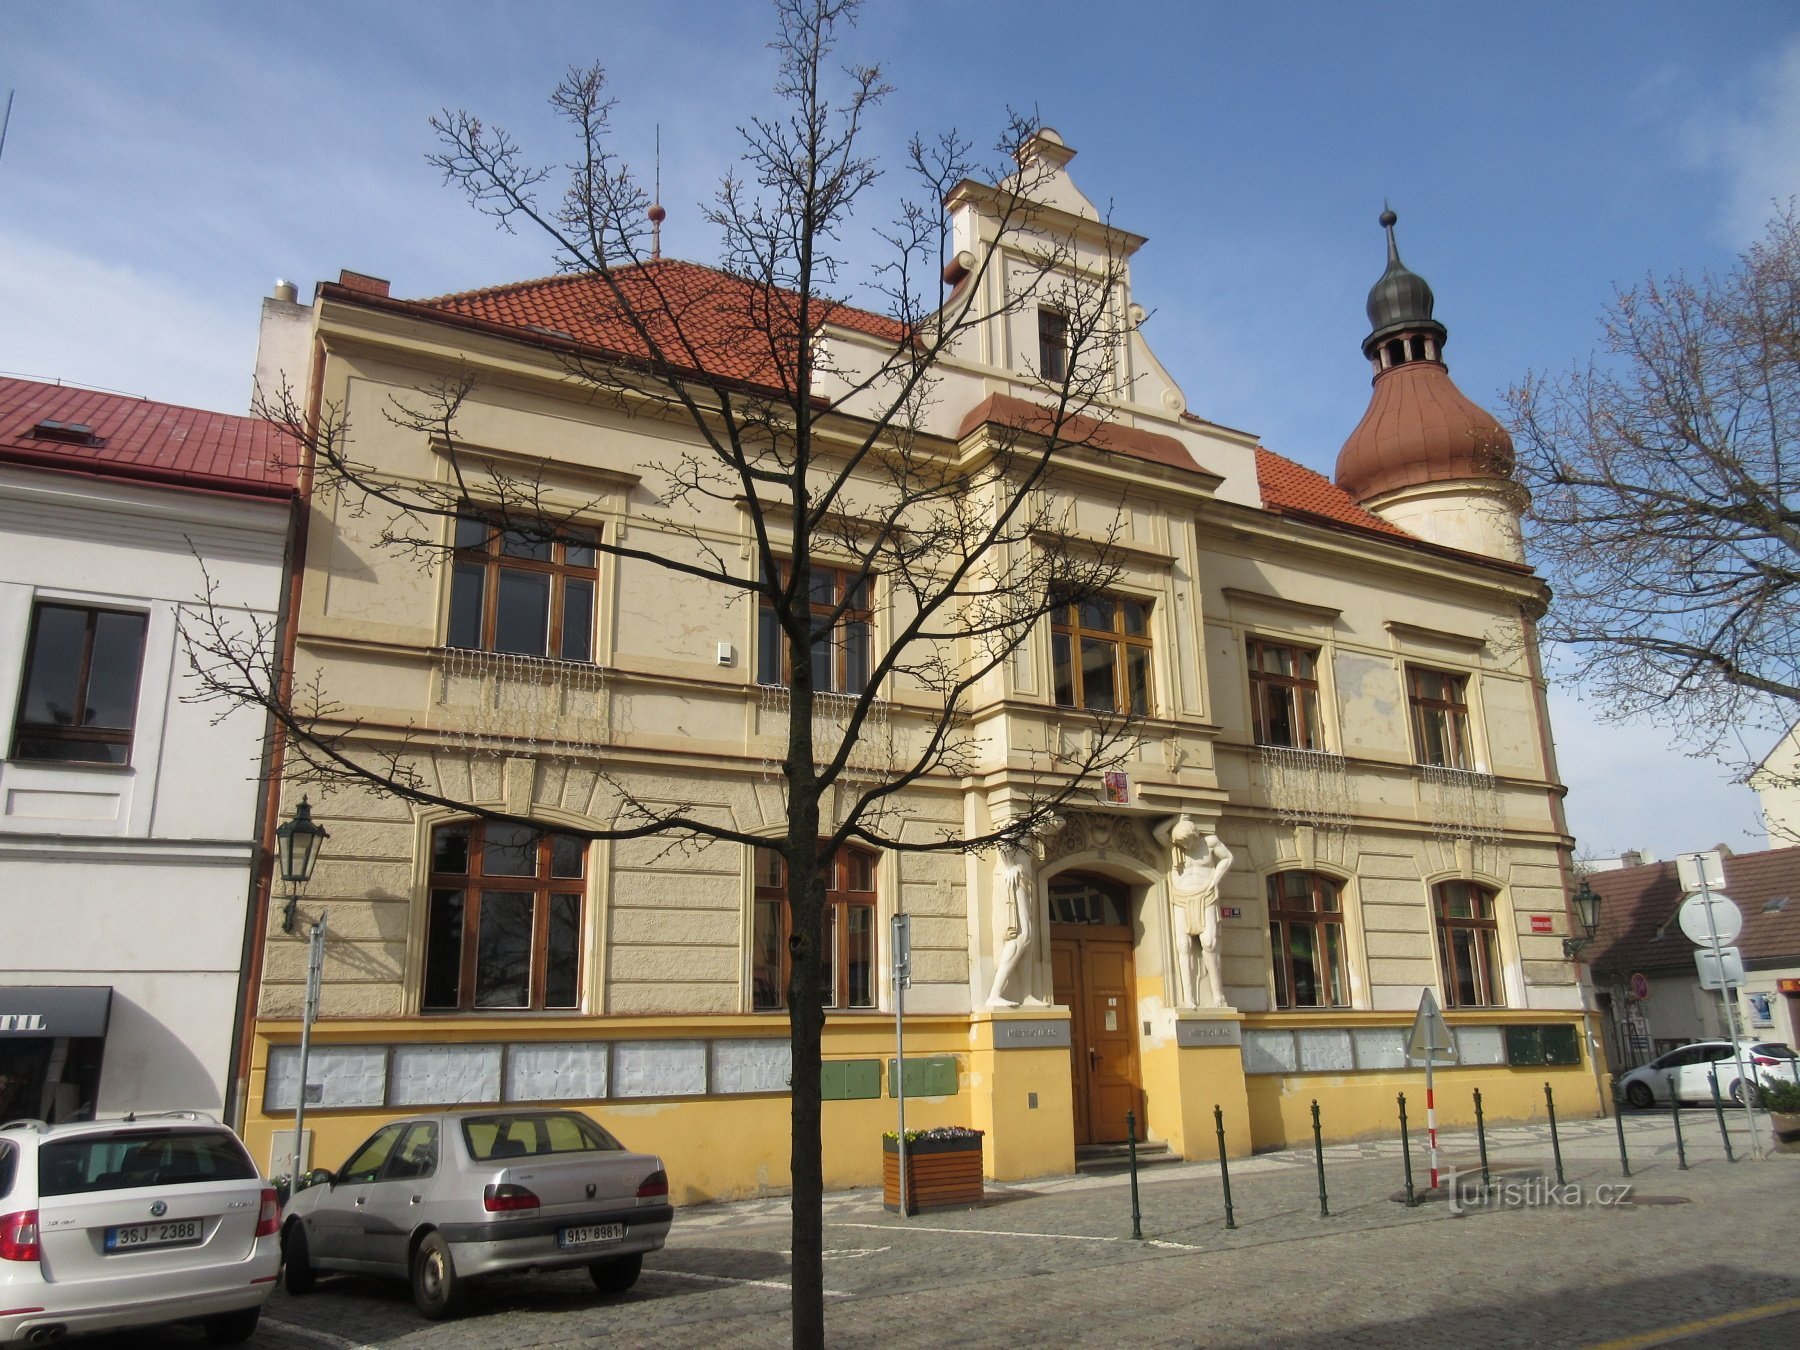 Ufficio comunale in piazza Masaryk